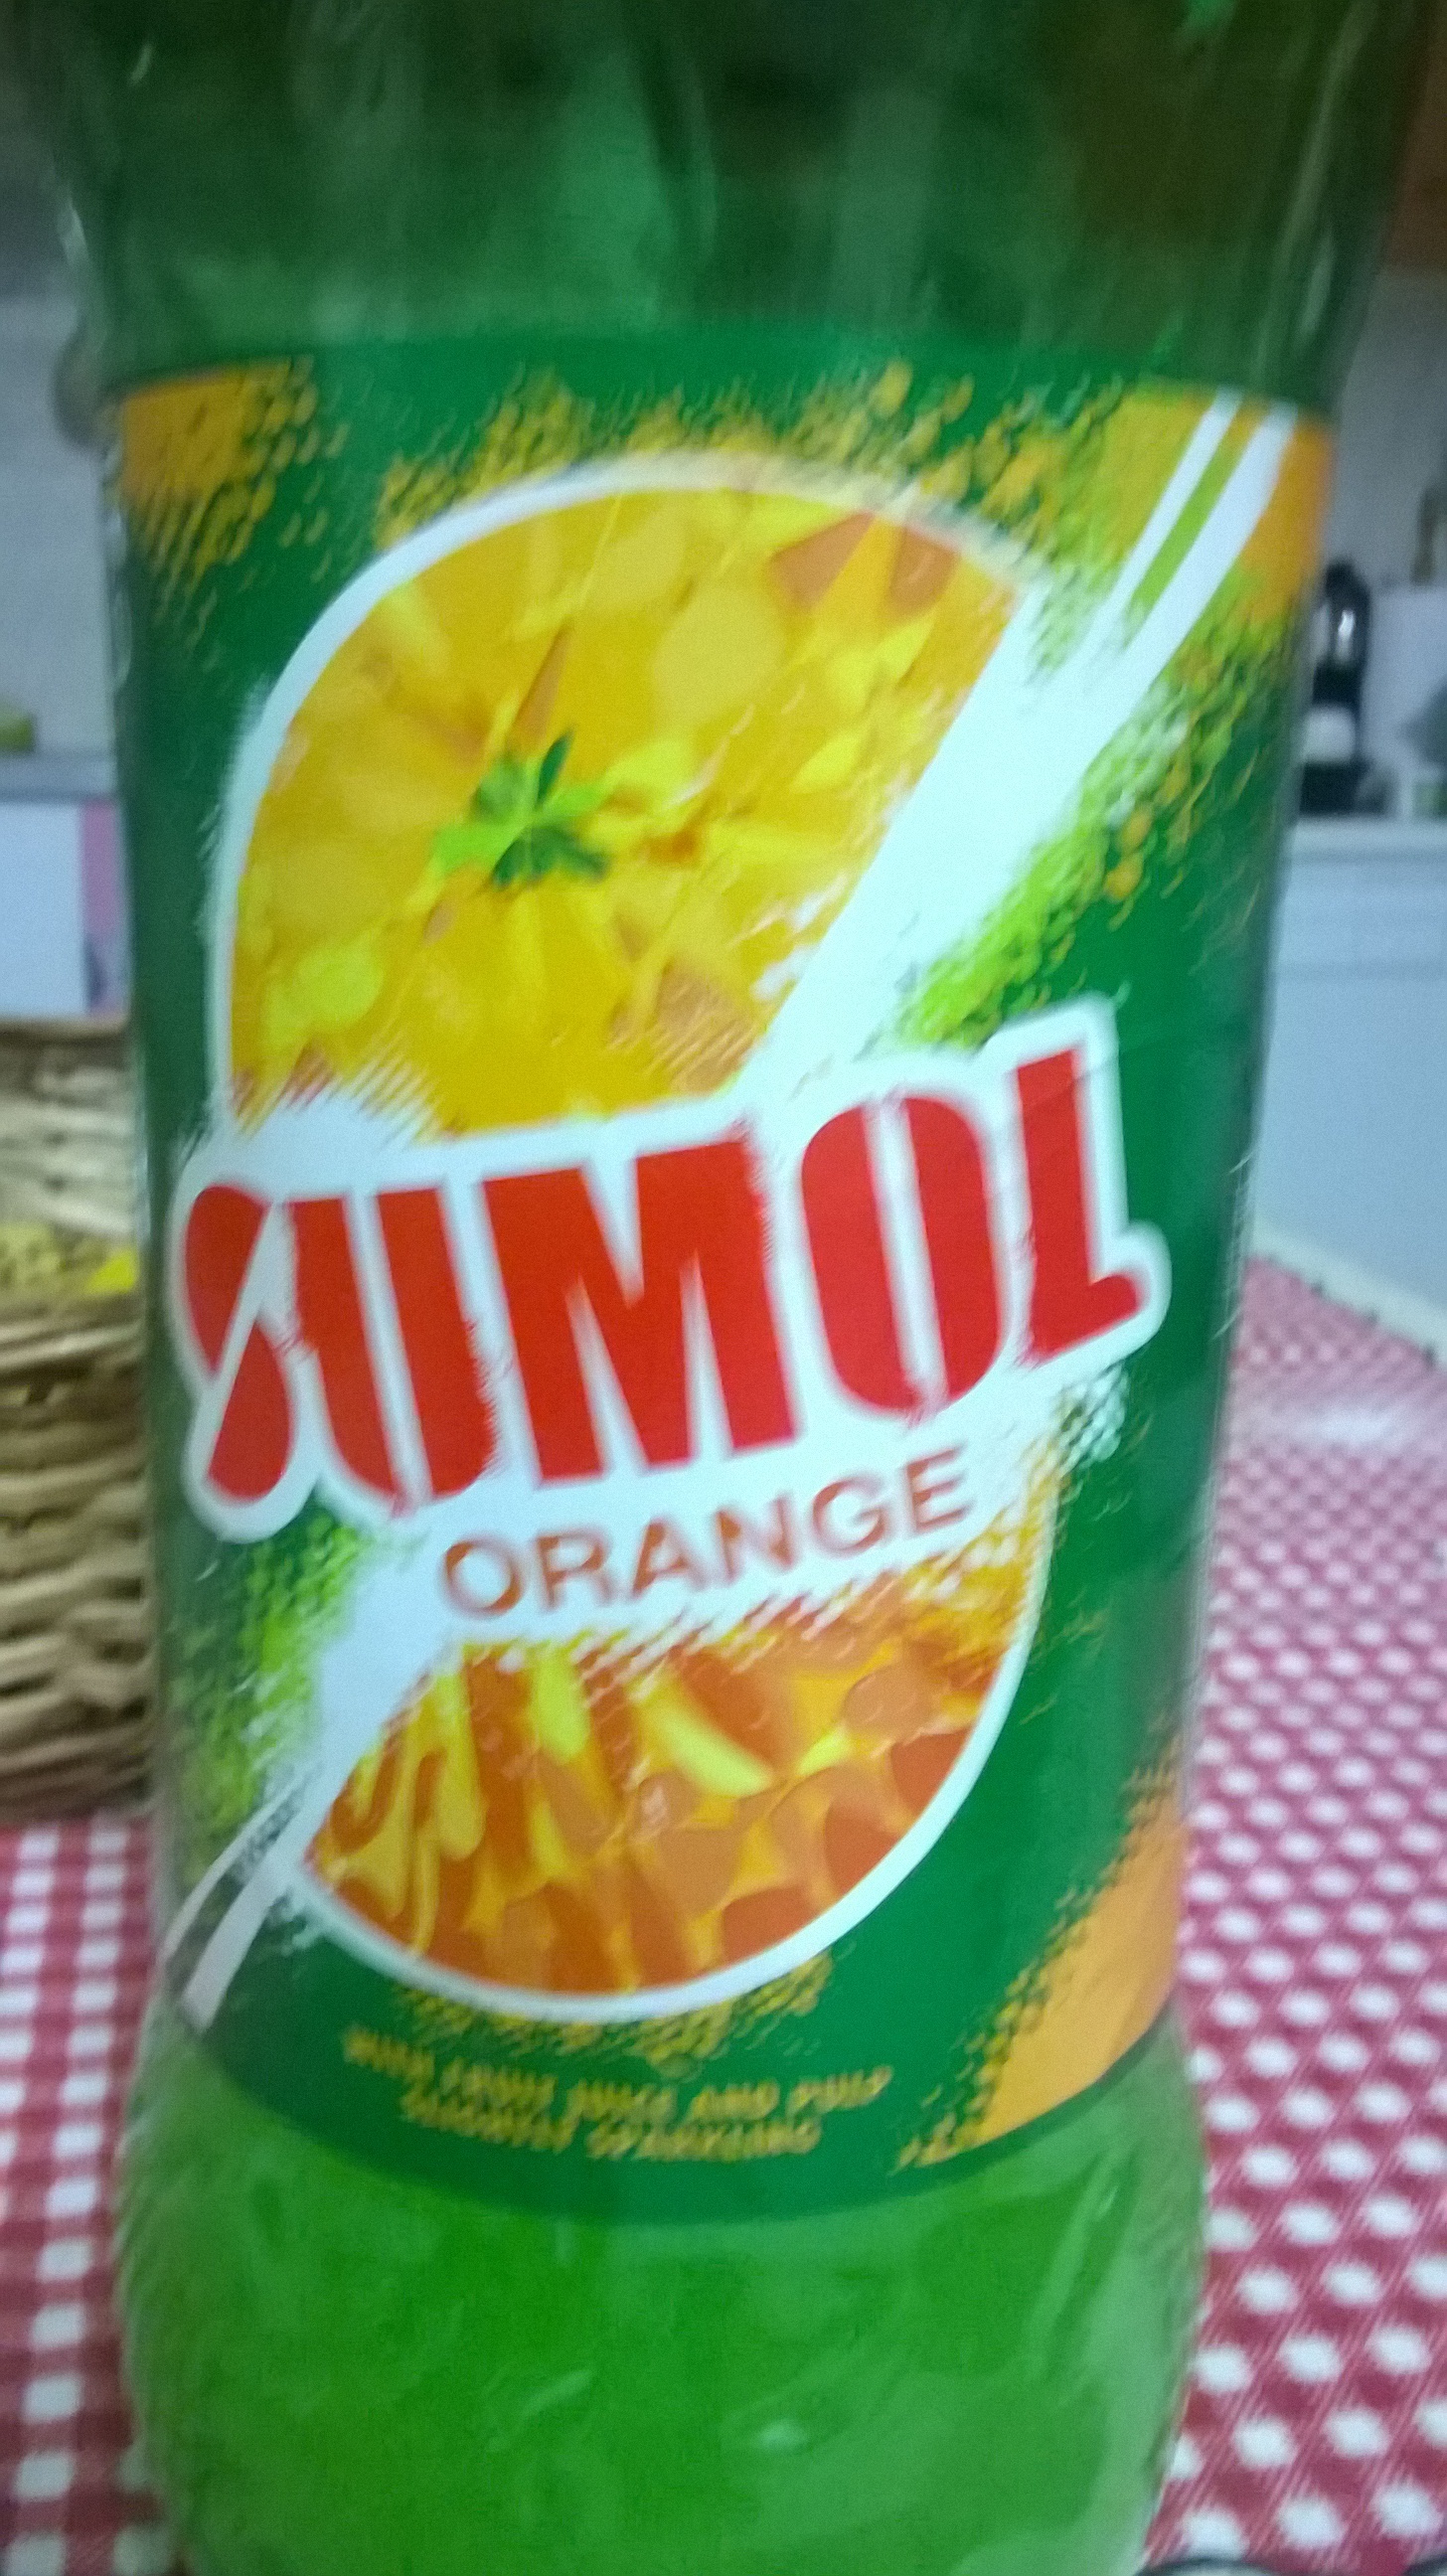 Sumol orange - Produto - en